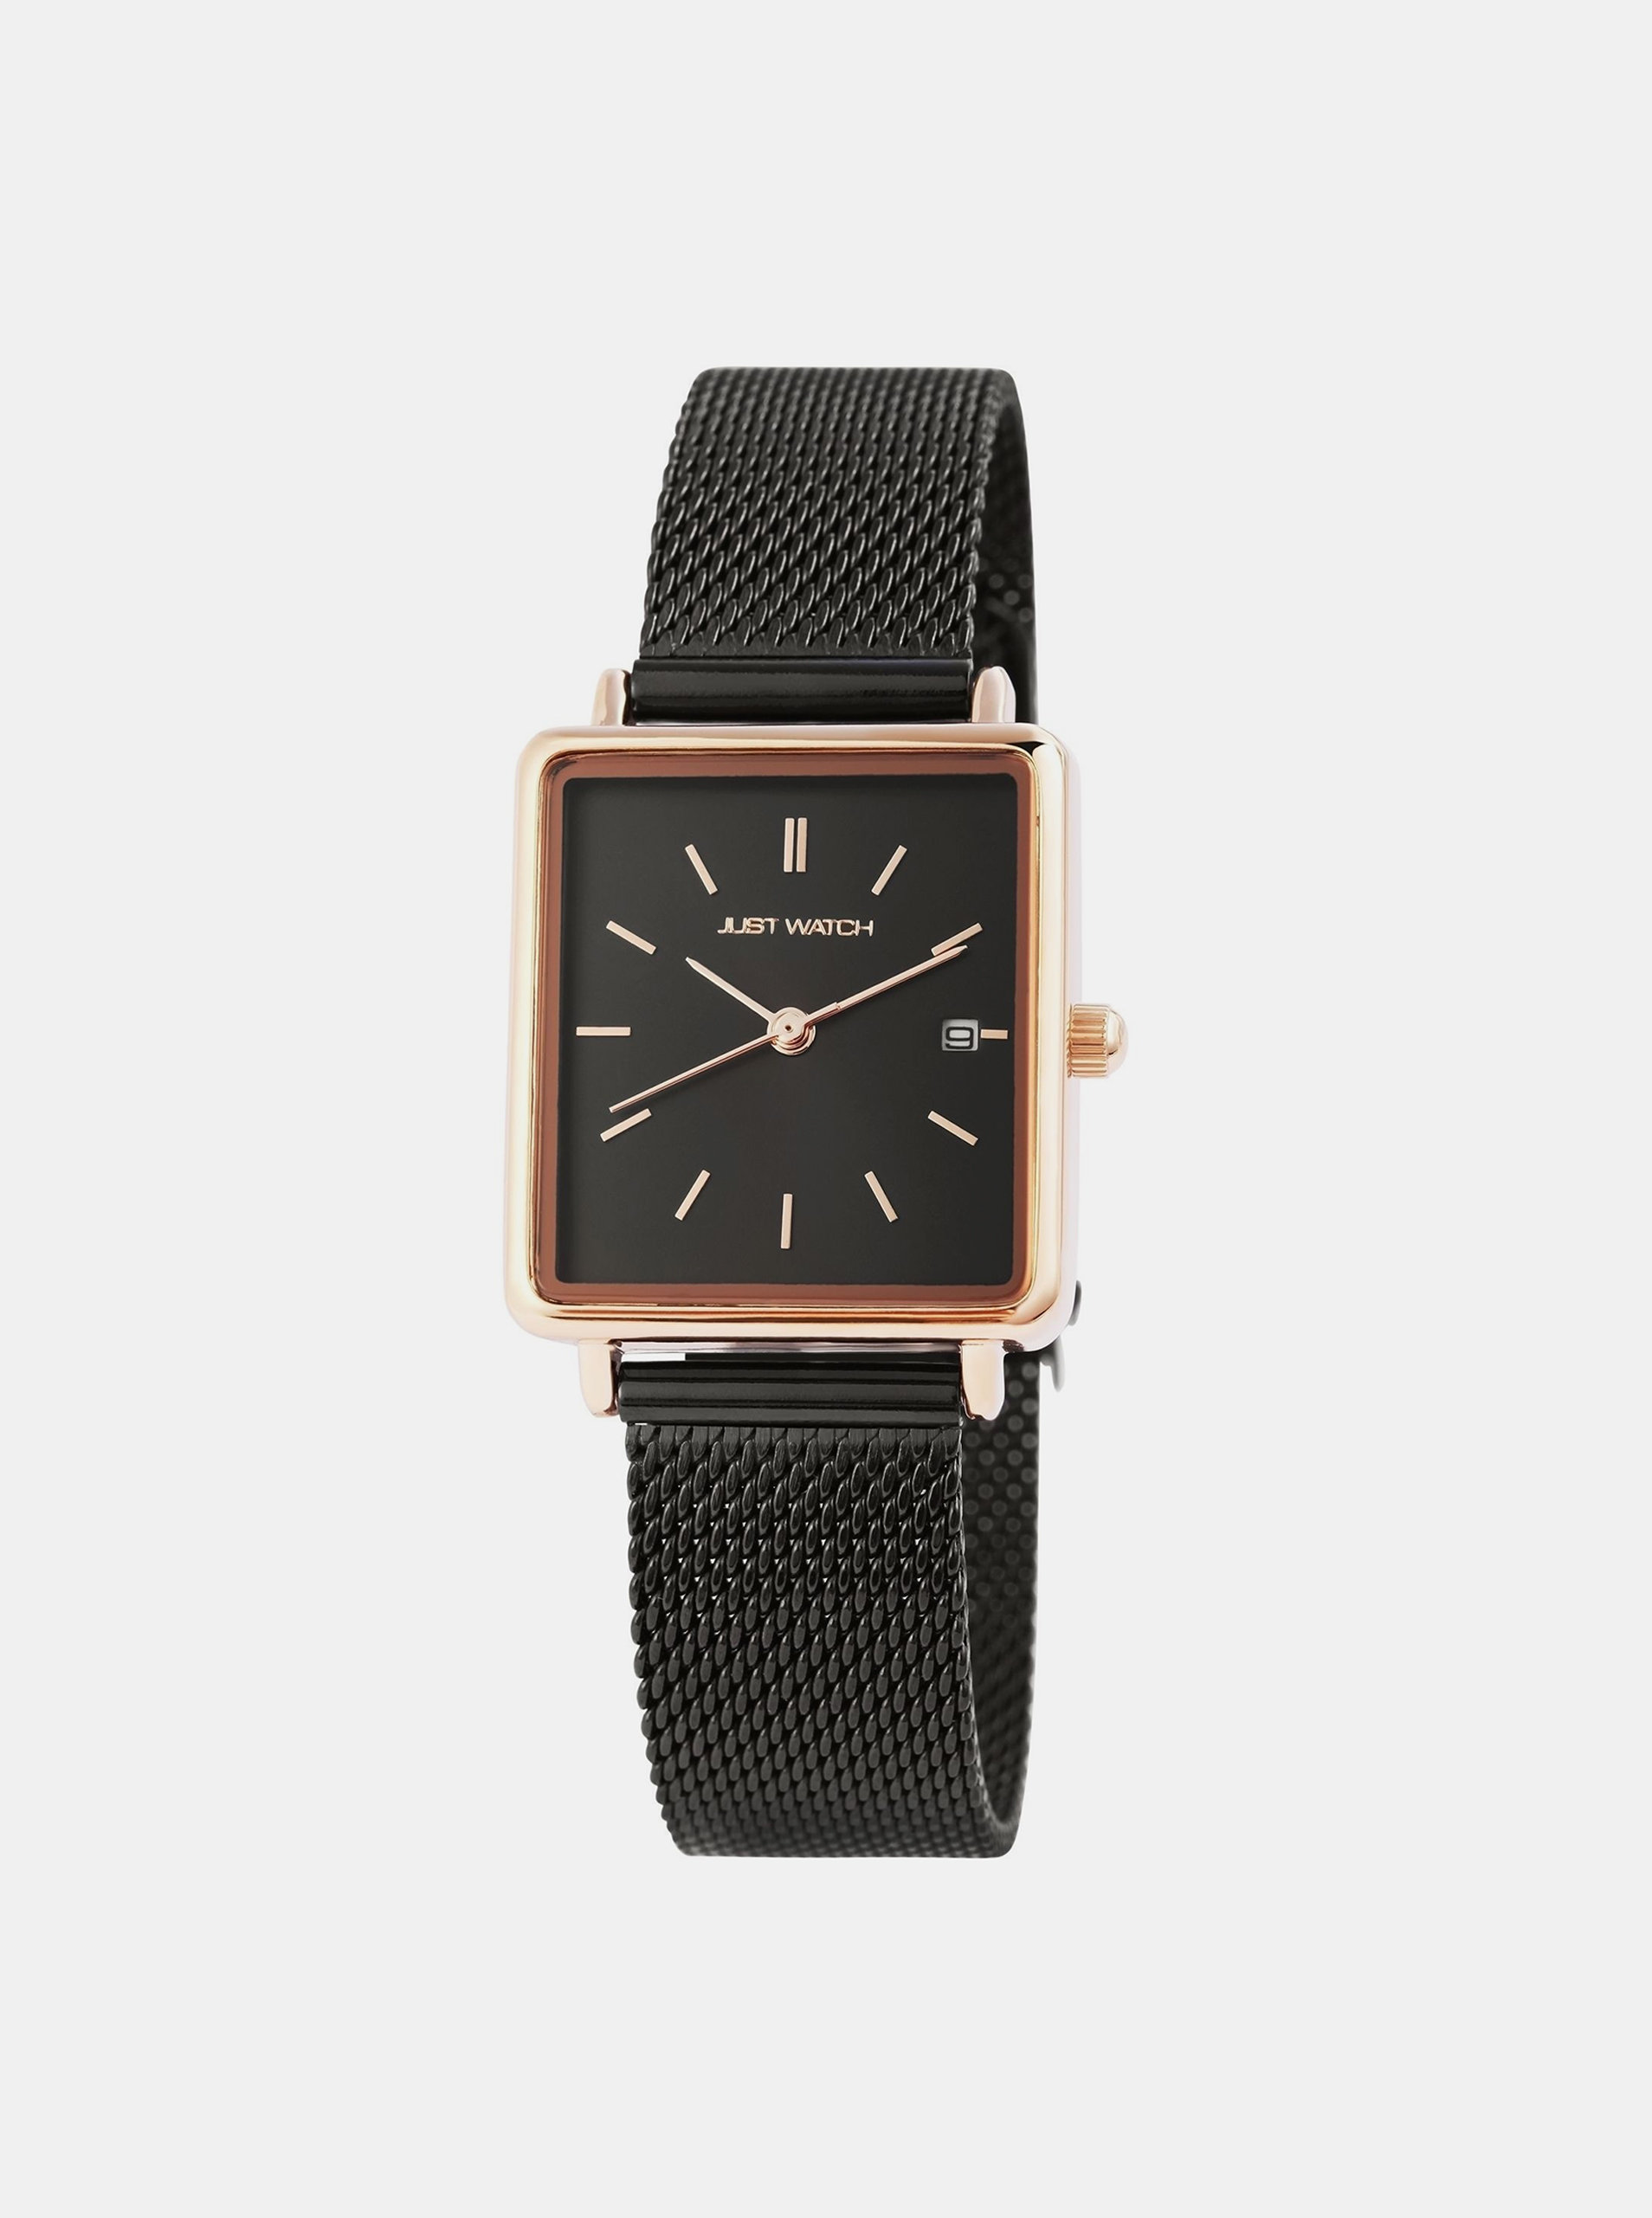 Dámské hodinky s nerezovým páskem v černé barvě Just Watch